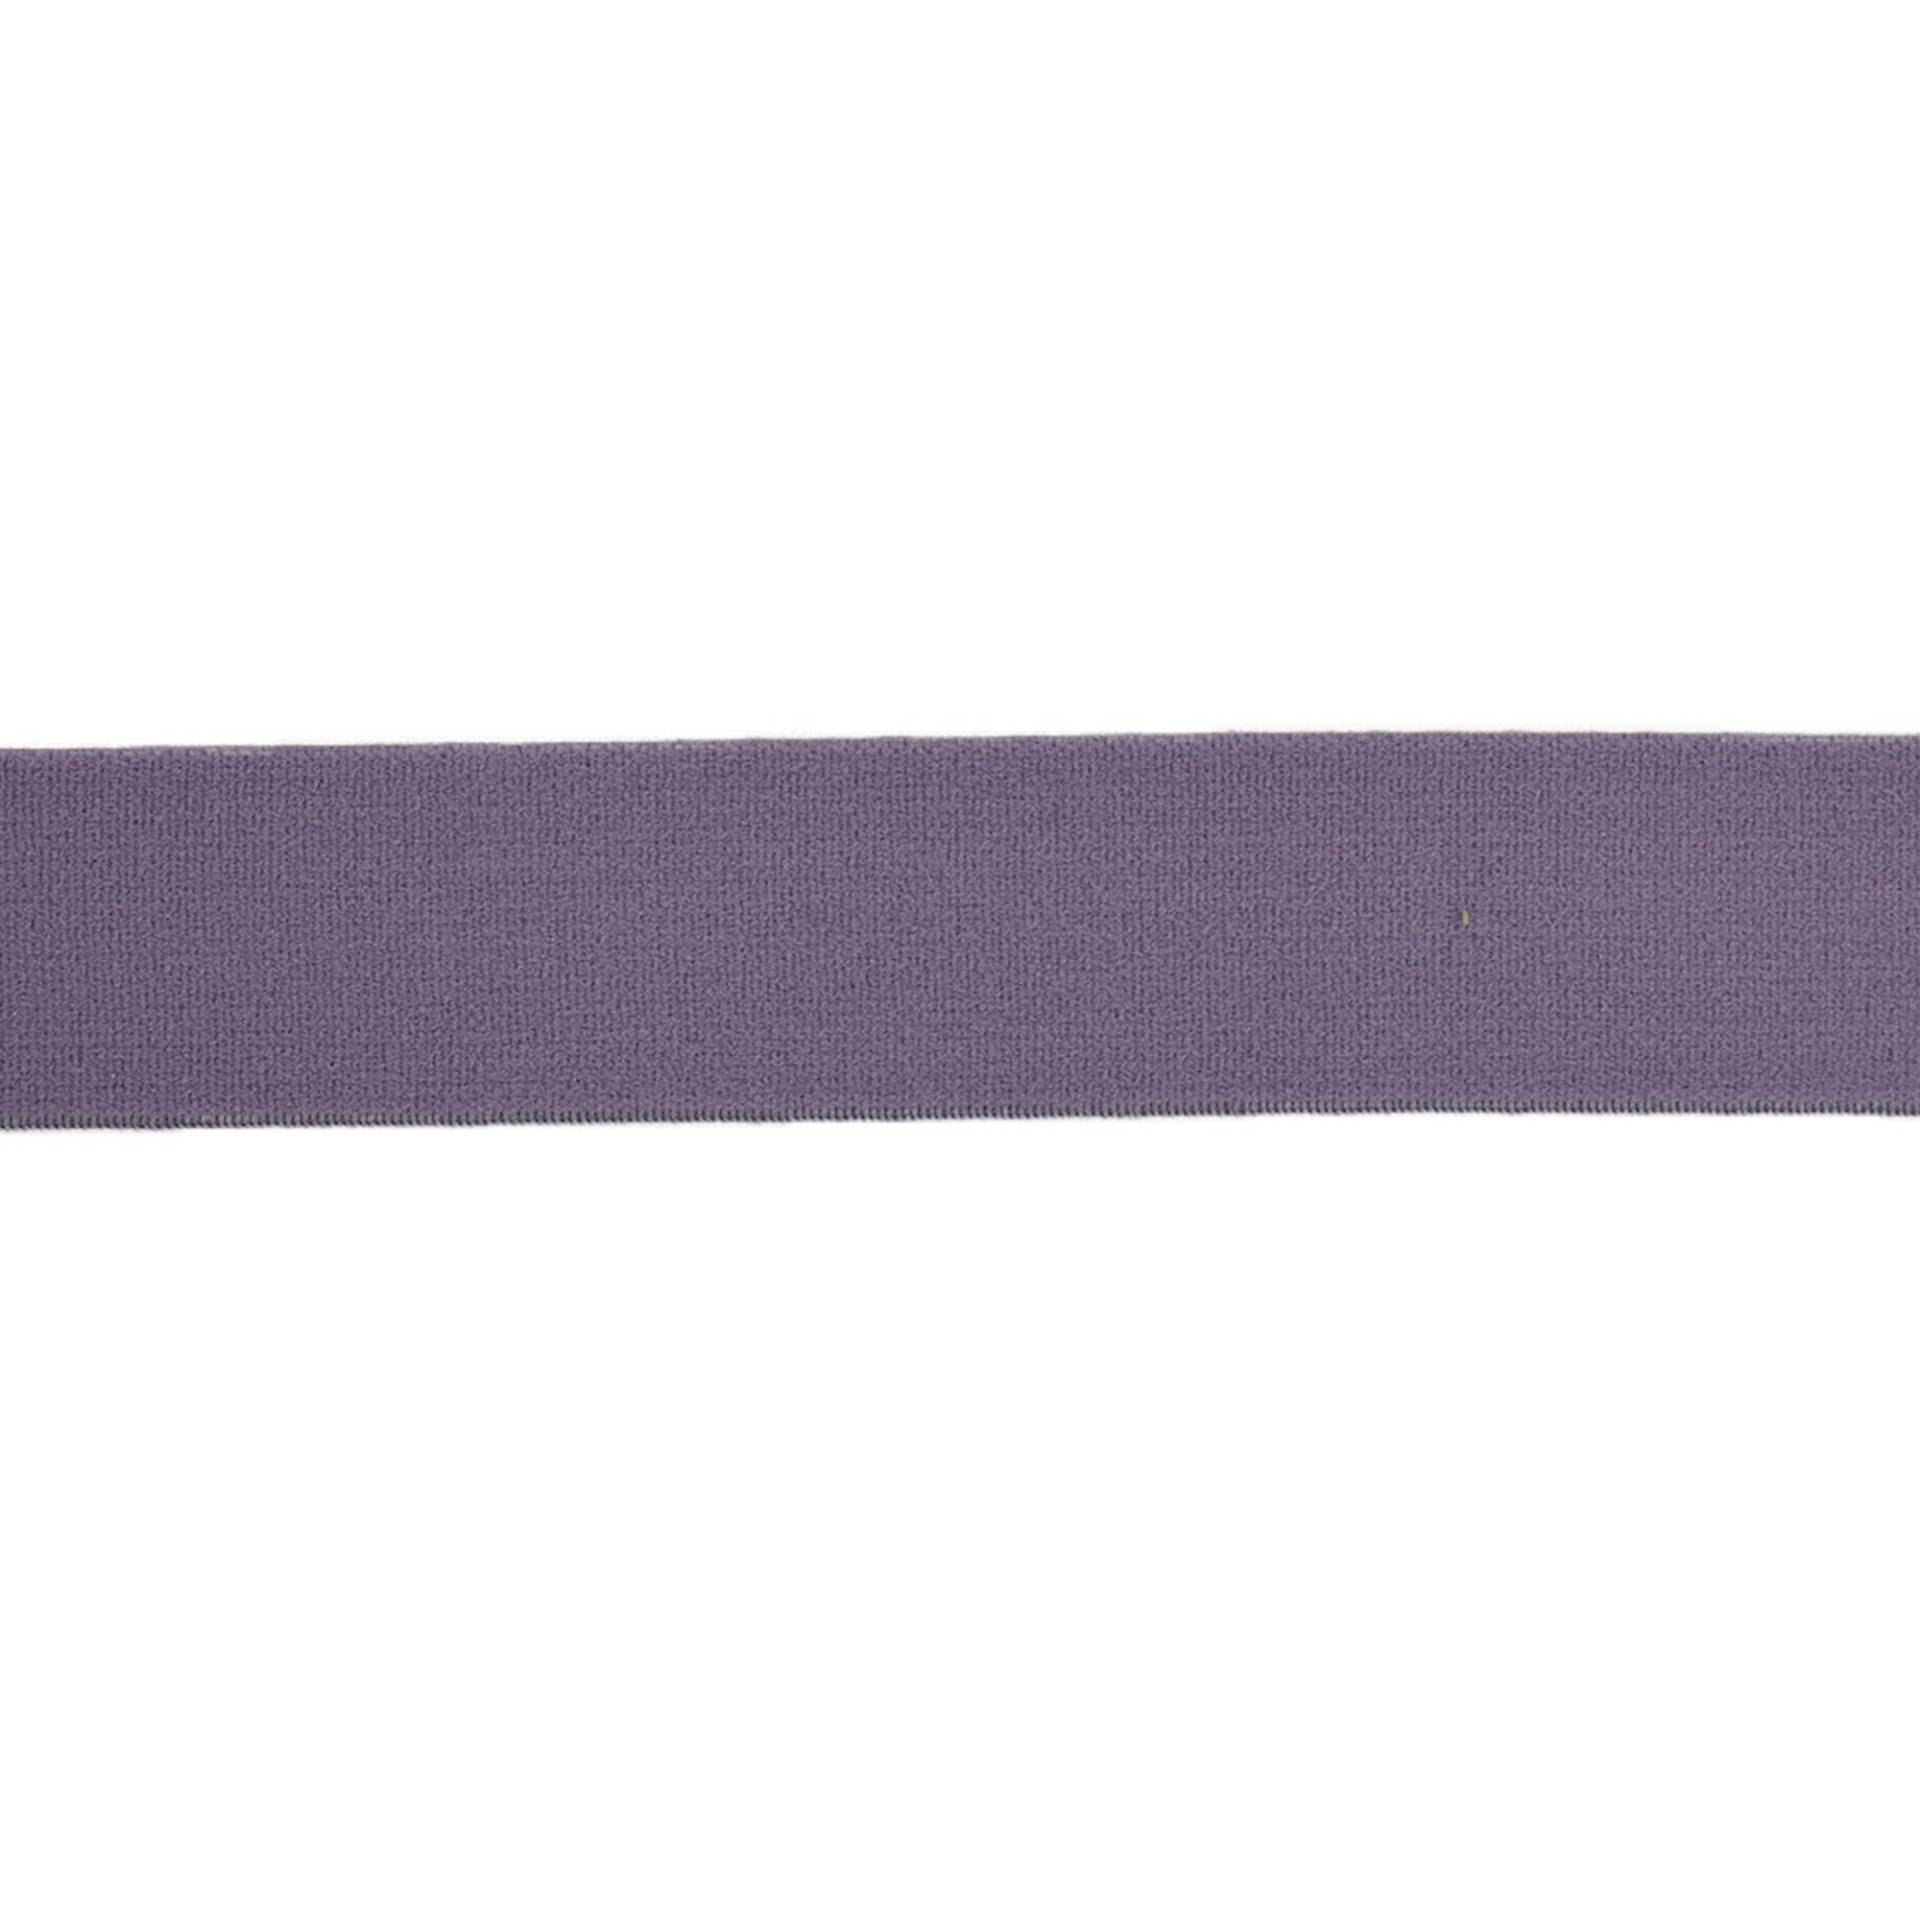 Elastikband uni 3cm, flieder von Stoffe Hemmers